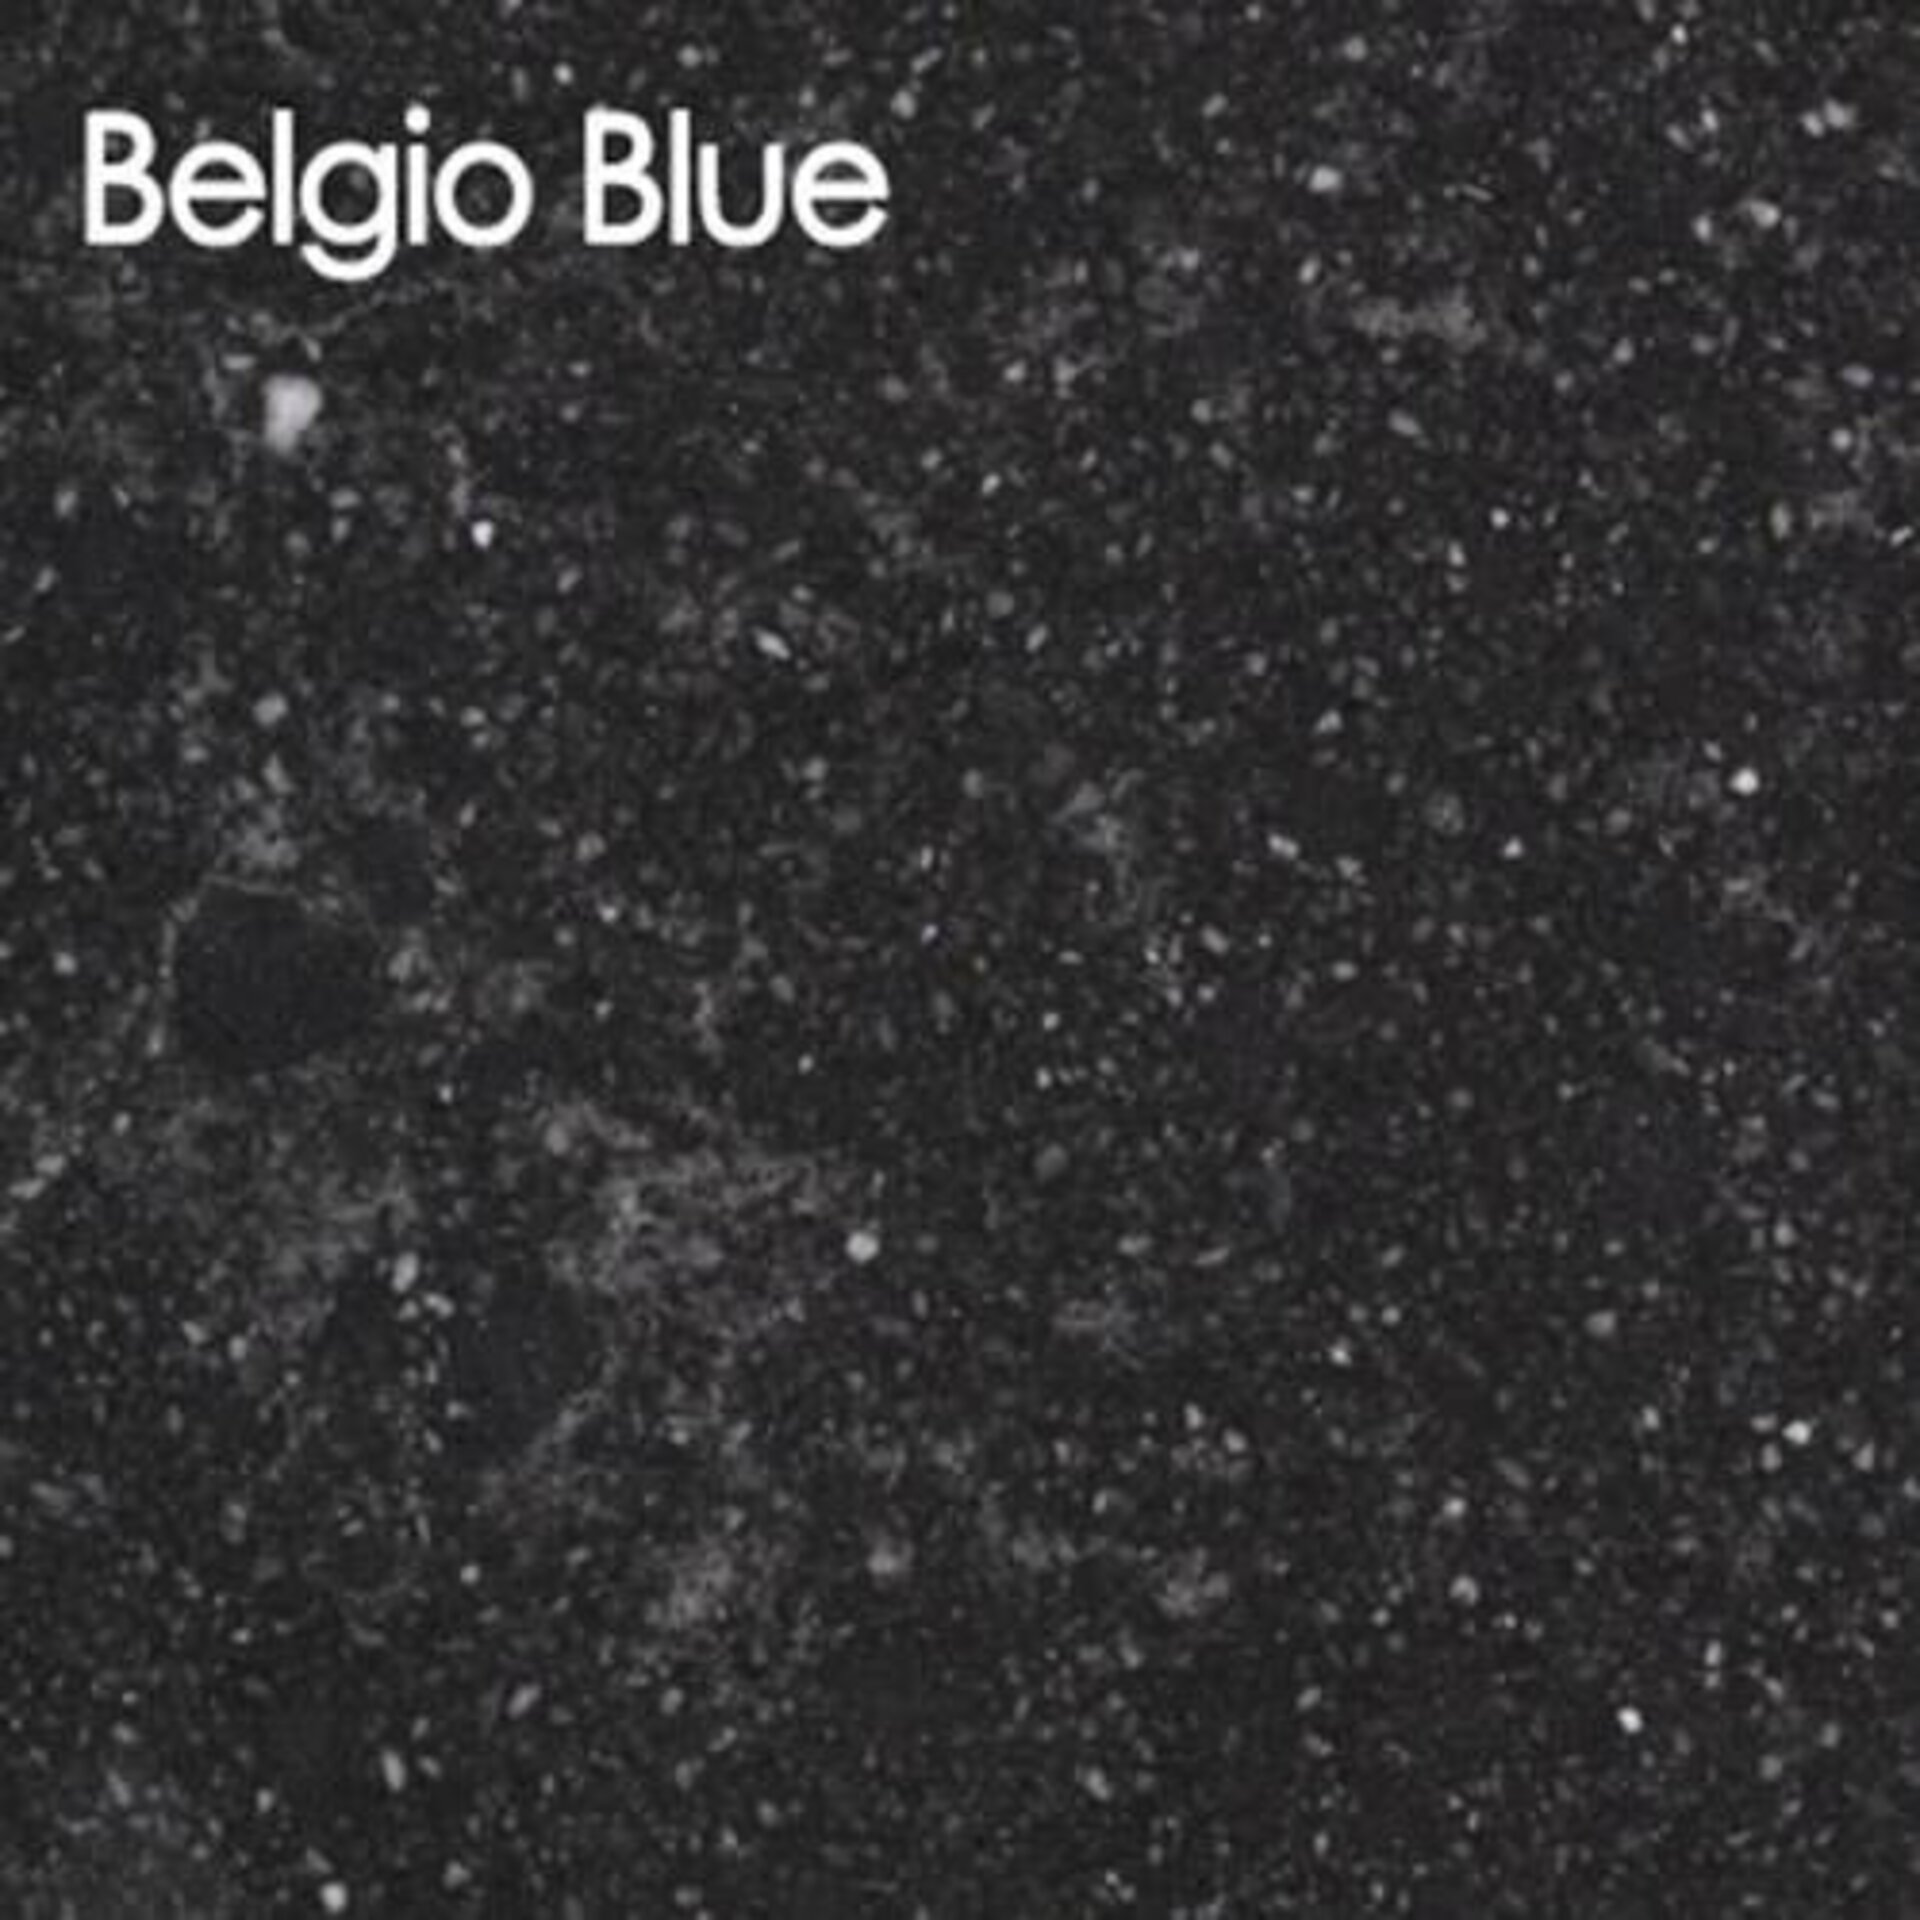 Arbeitsplatte aus Kunststein in der Ausführung Belgio Blue.